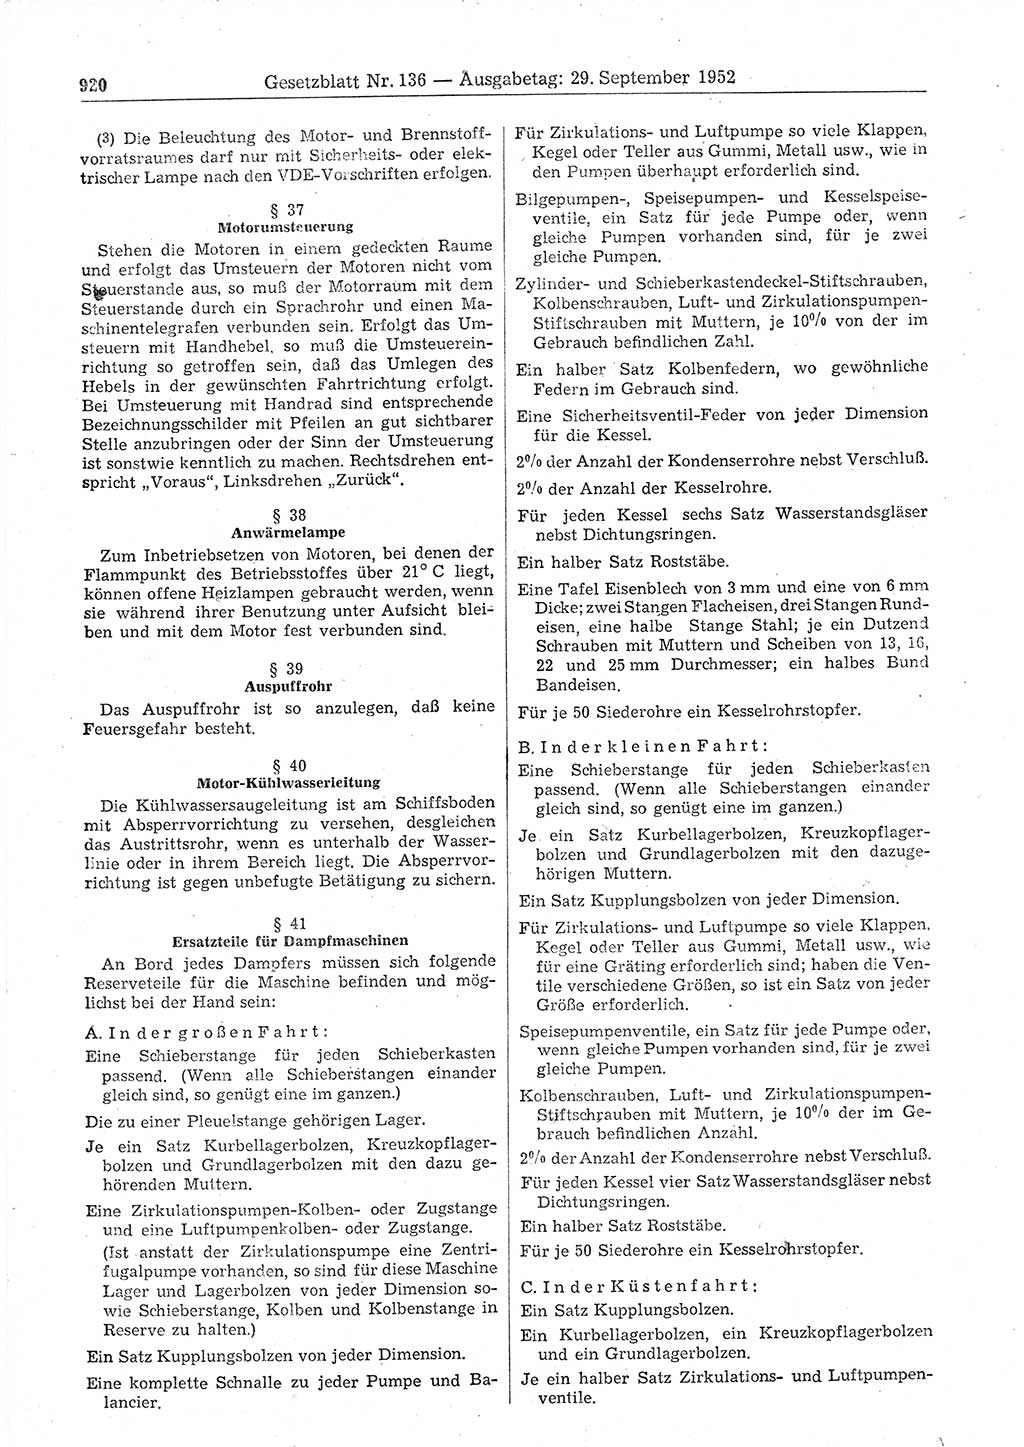 Gesetzblatt (GBl.) der Deutschen Demokratischen Republik (DDR) 1952, Seite 920 (GBl. DDR 1952, S. 920)